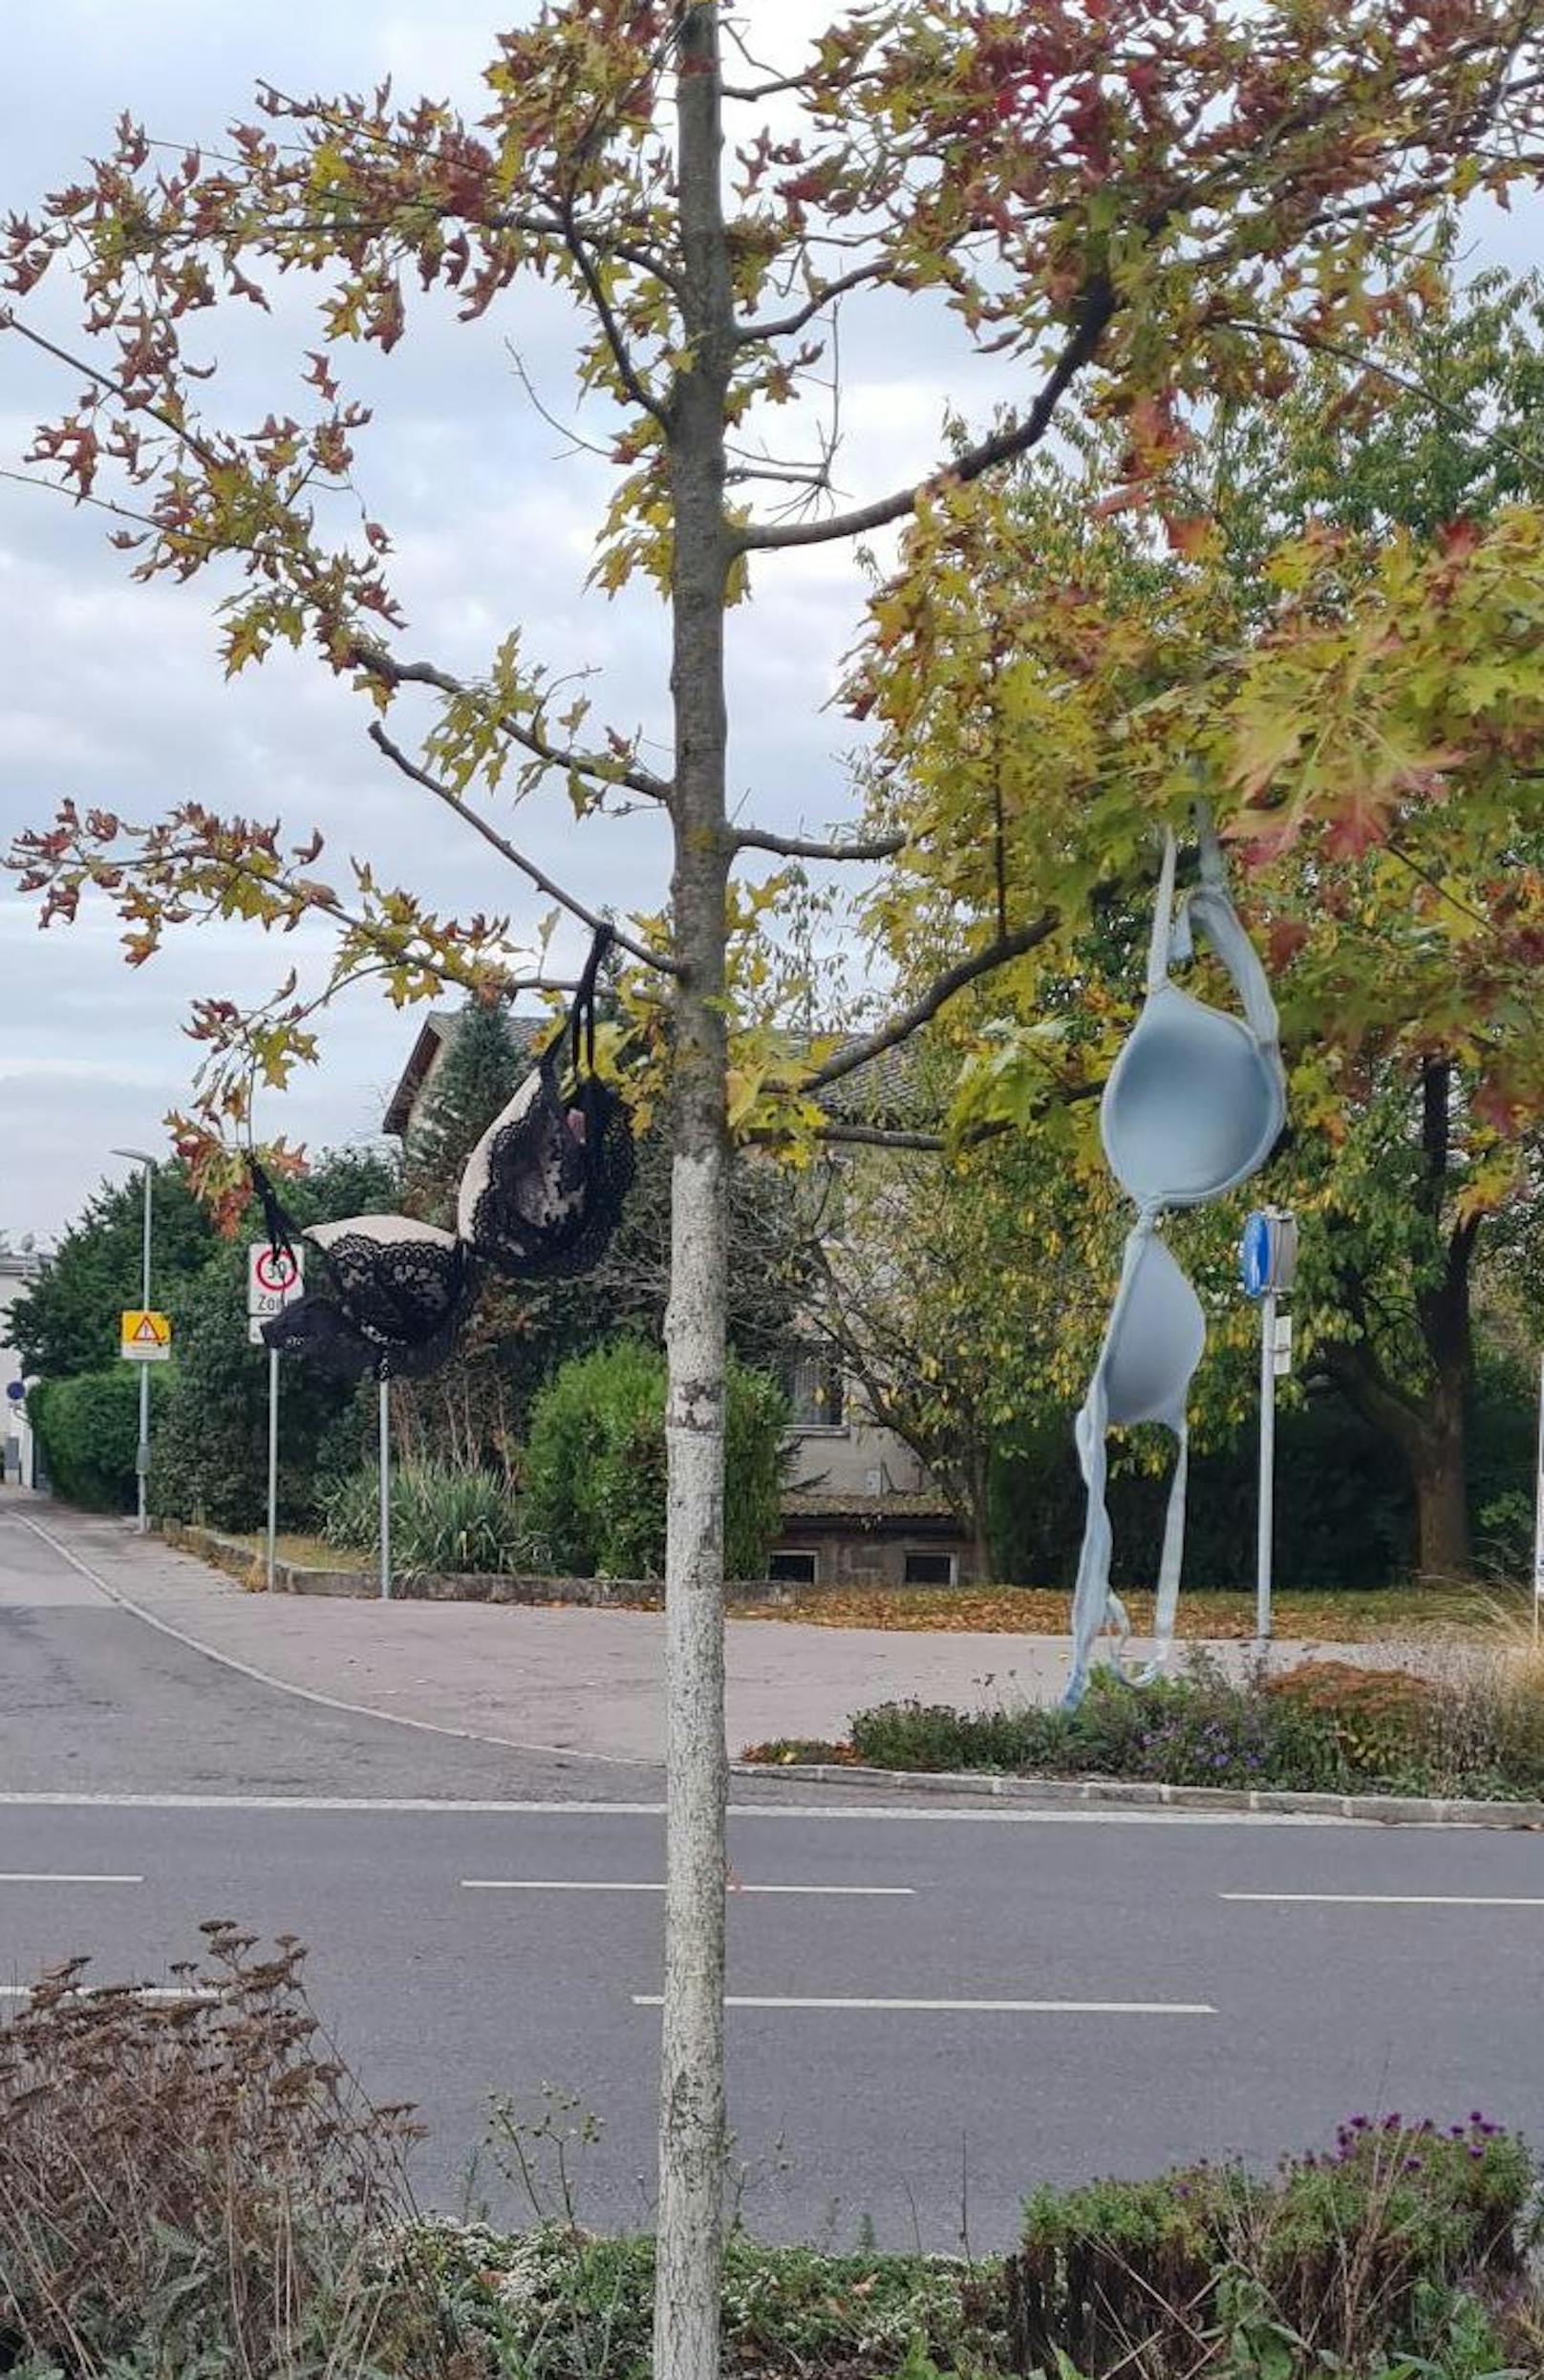 Diese Büstenhalter hängen auf einem Baum neben einer stark befahrenen Straße.